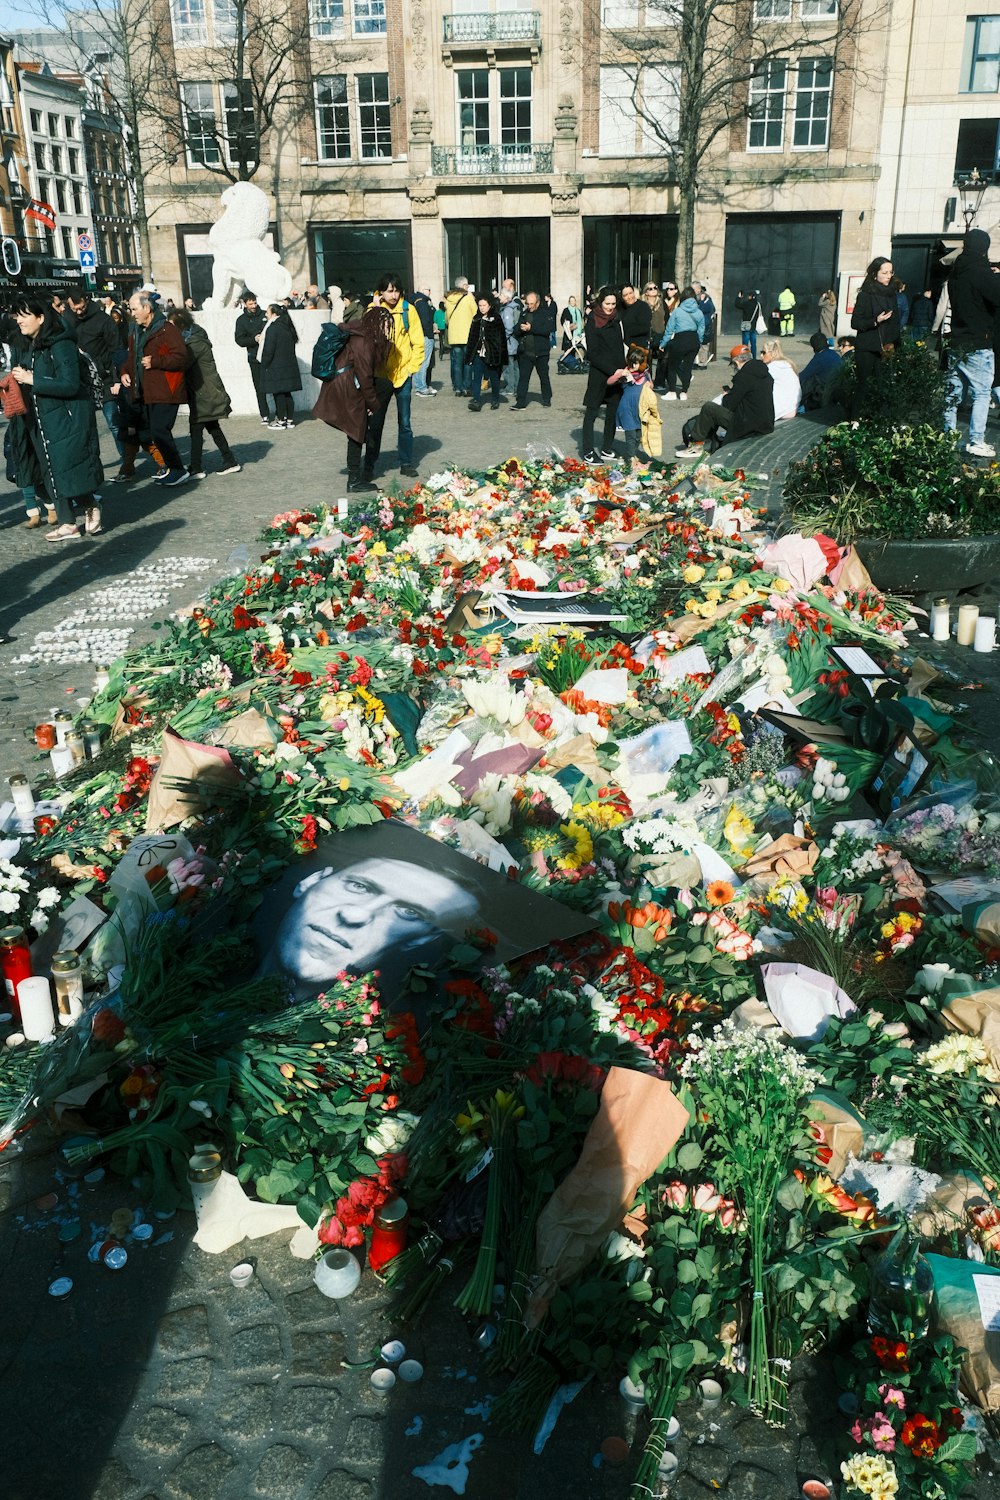 un groupe de personnes debout autour d’un tas de fleurs